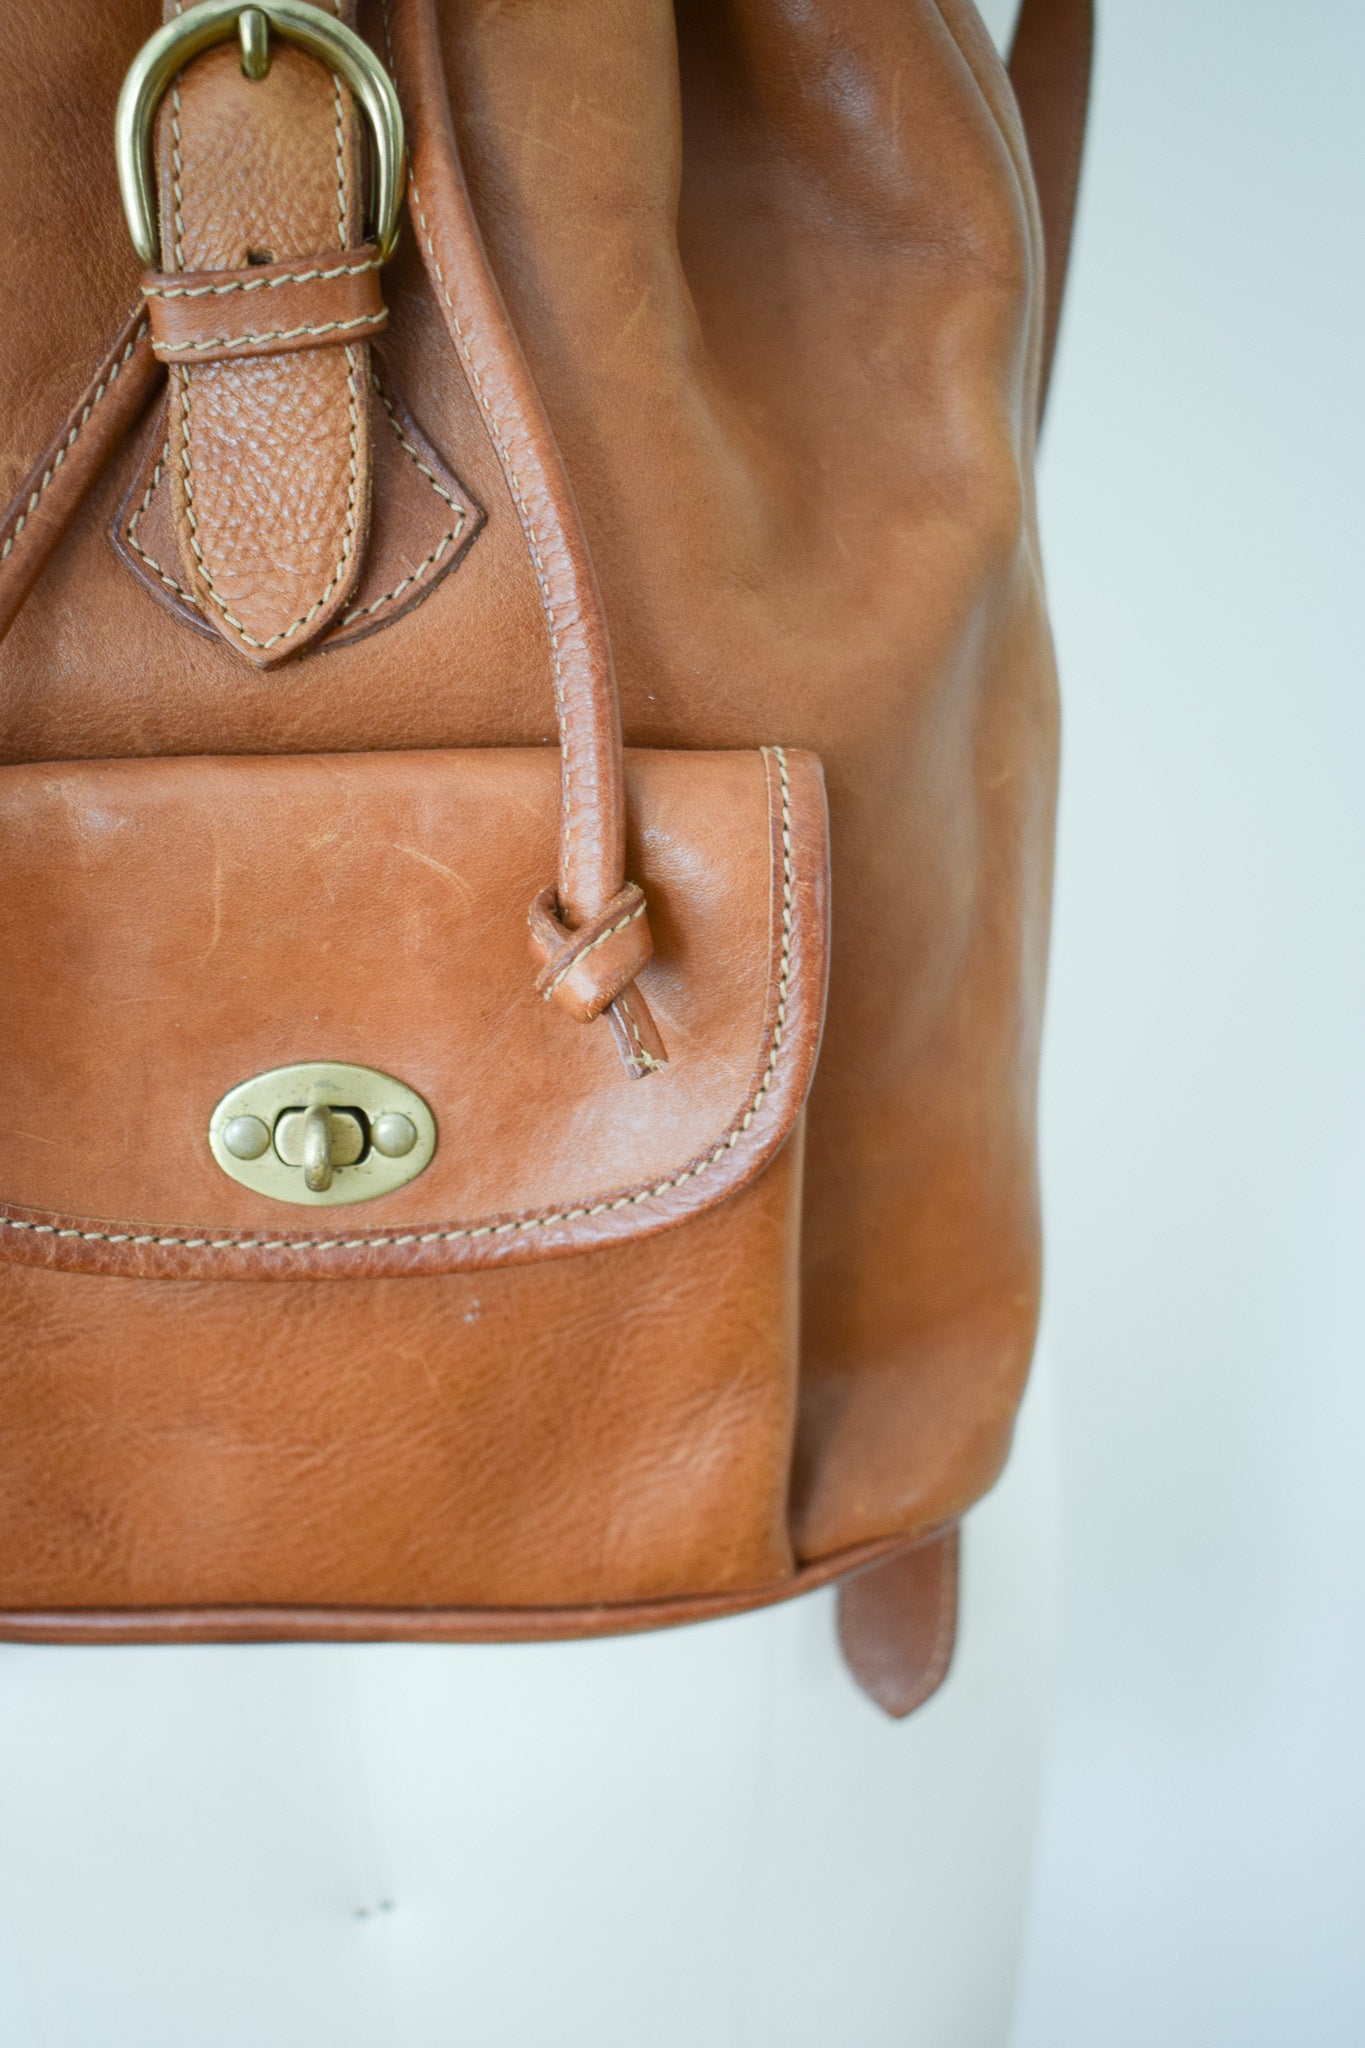 Vintage Camel Leather Backpack